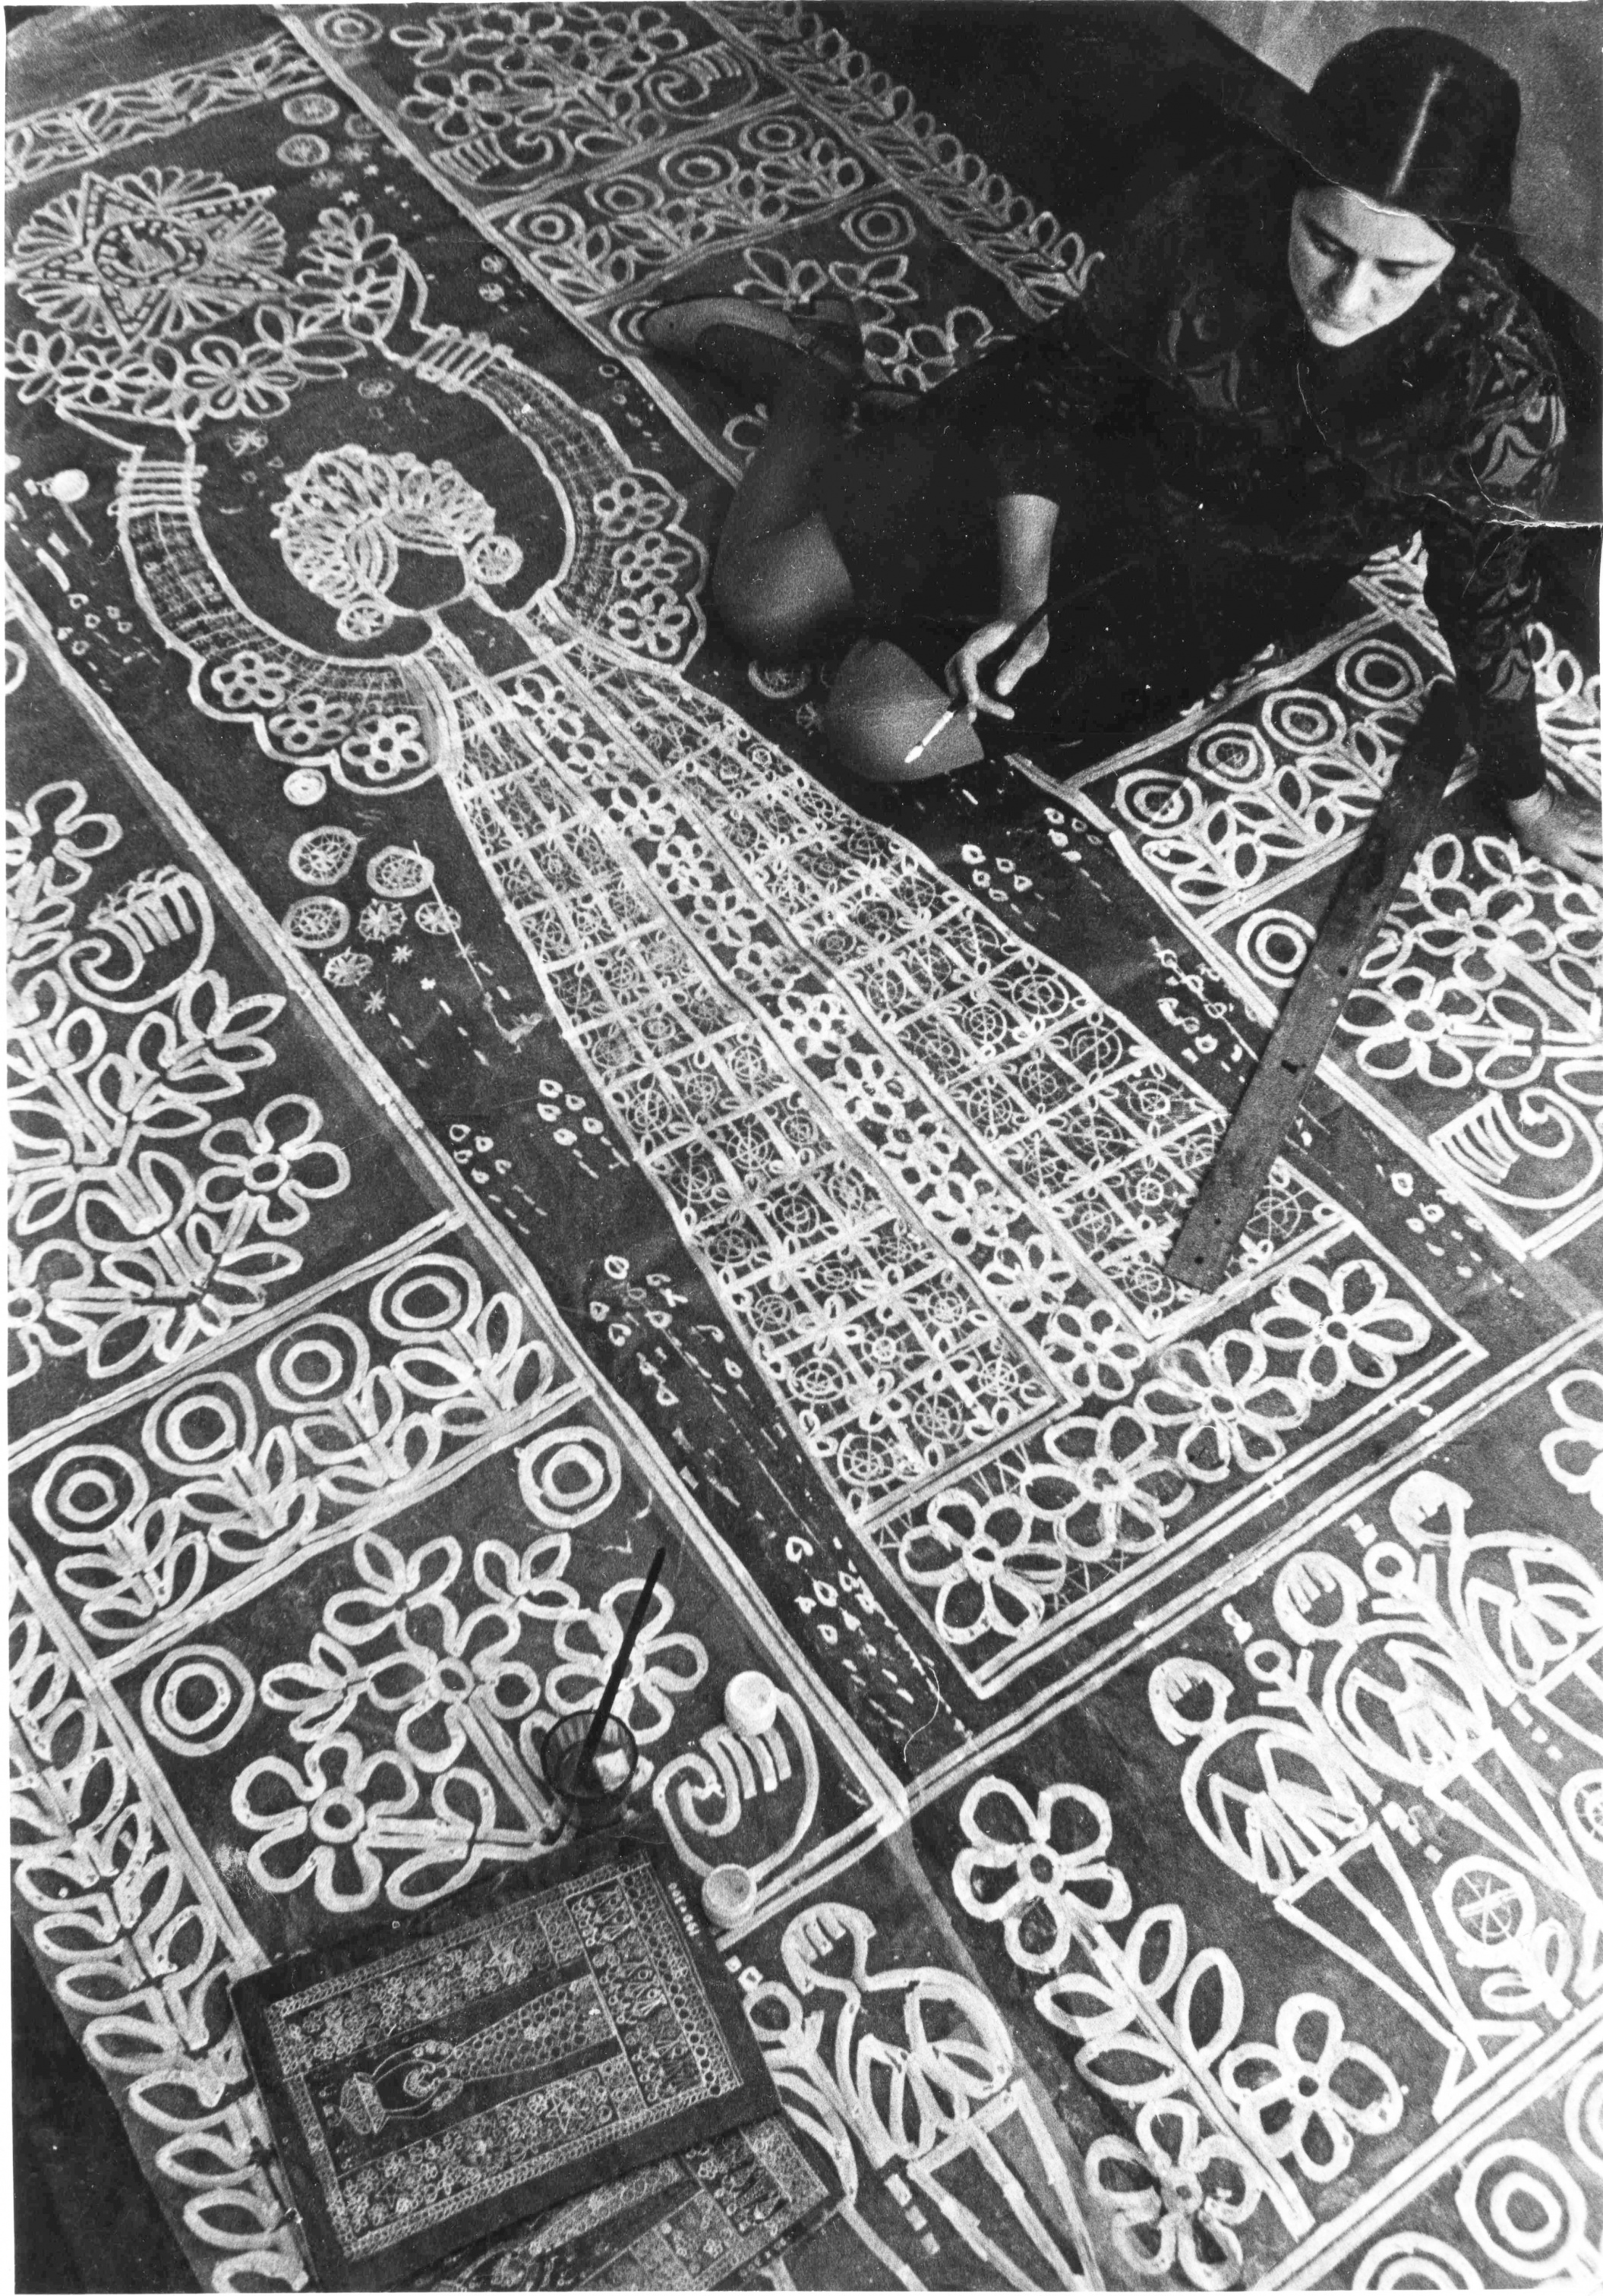 Г.Мамровская за созданием панно «Праздник», 1975 г. Фото из личного архива Г.Мамровской